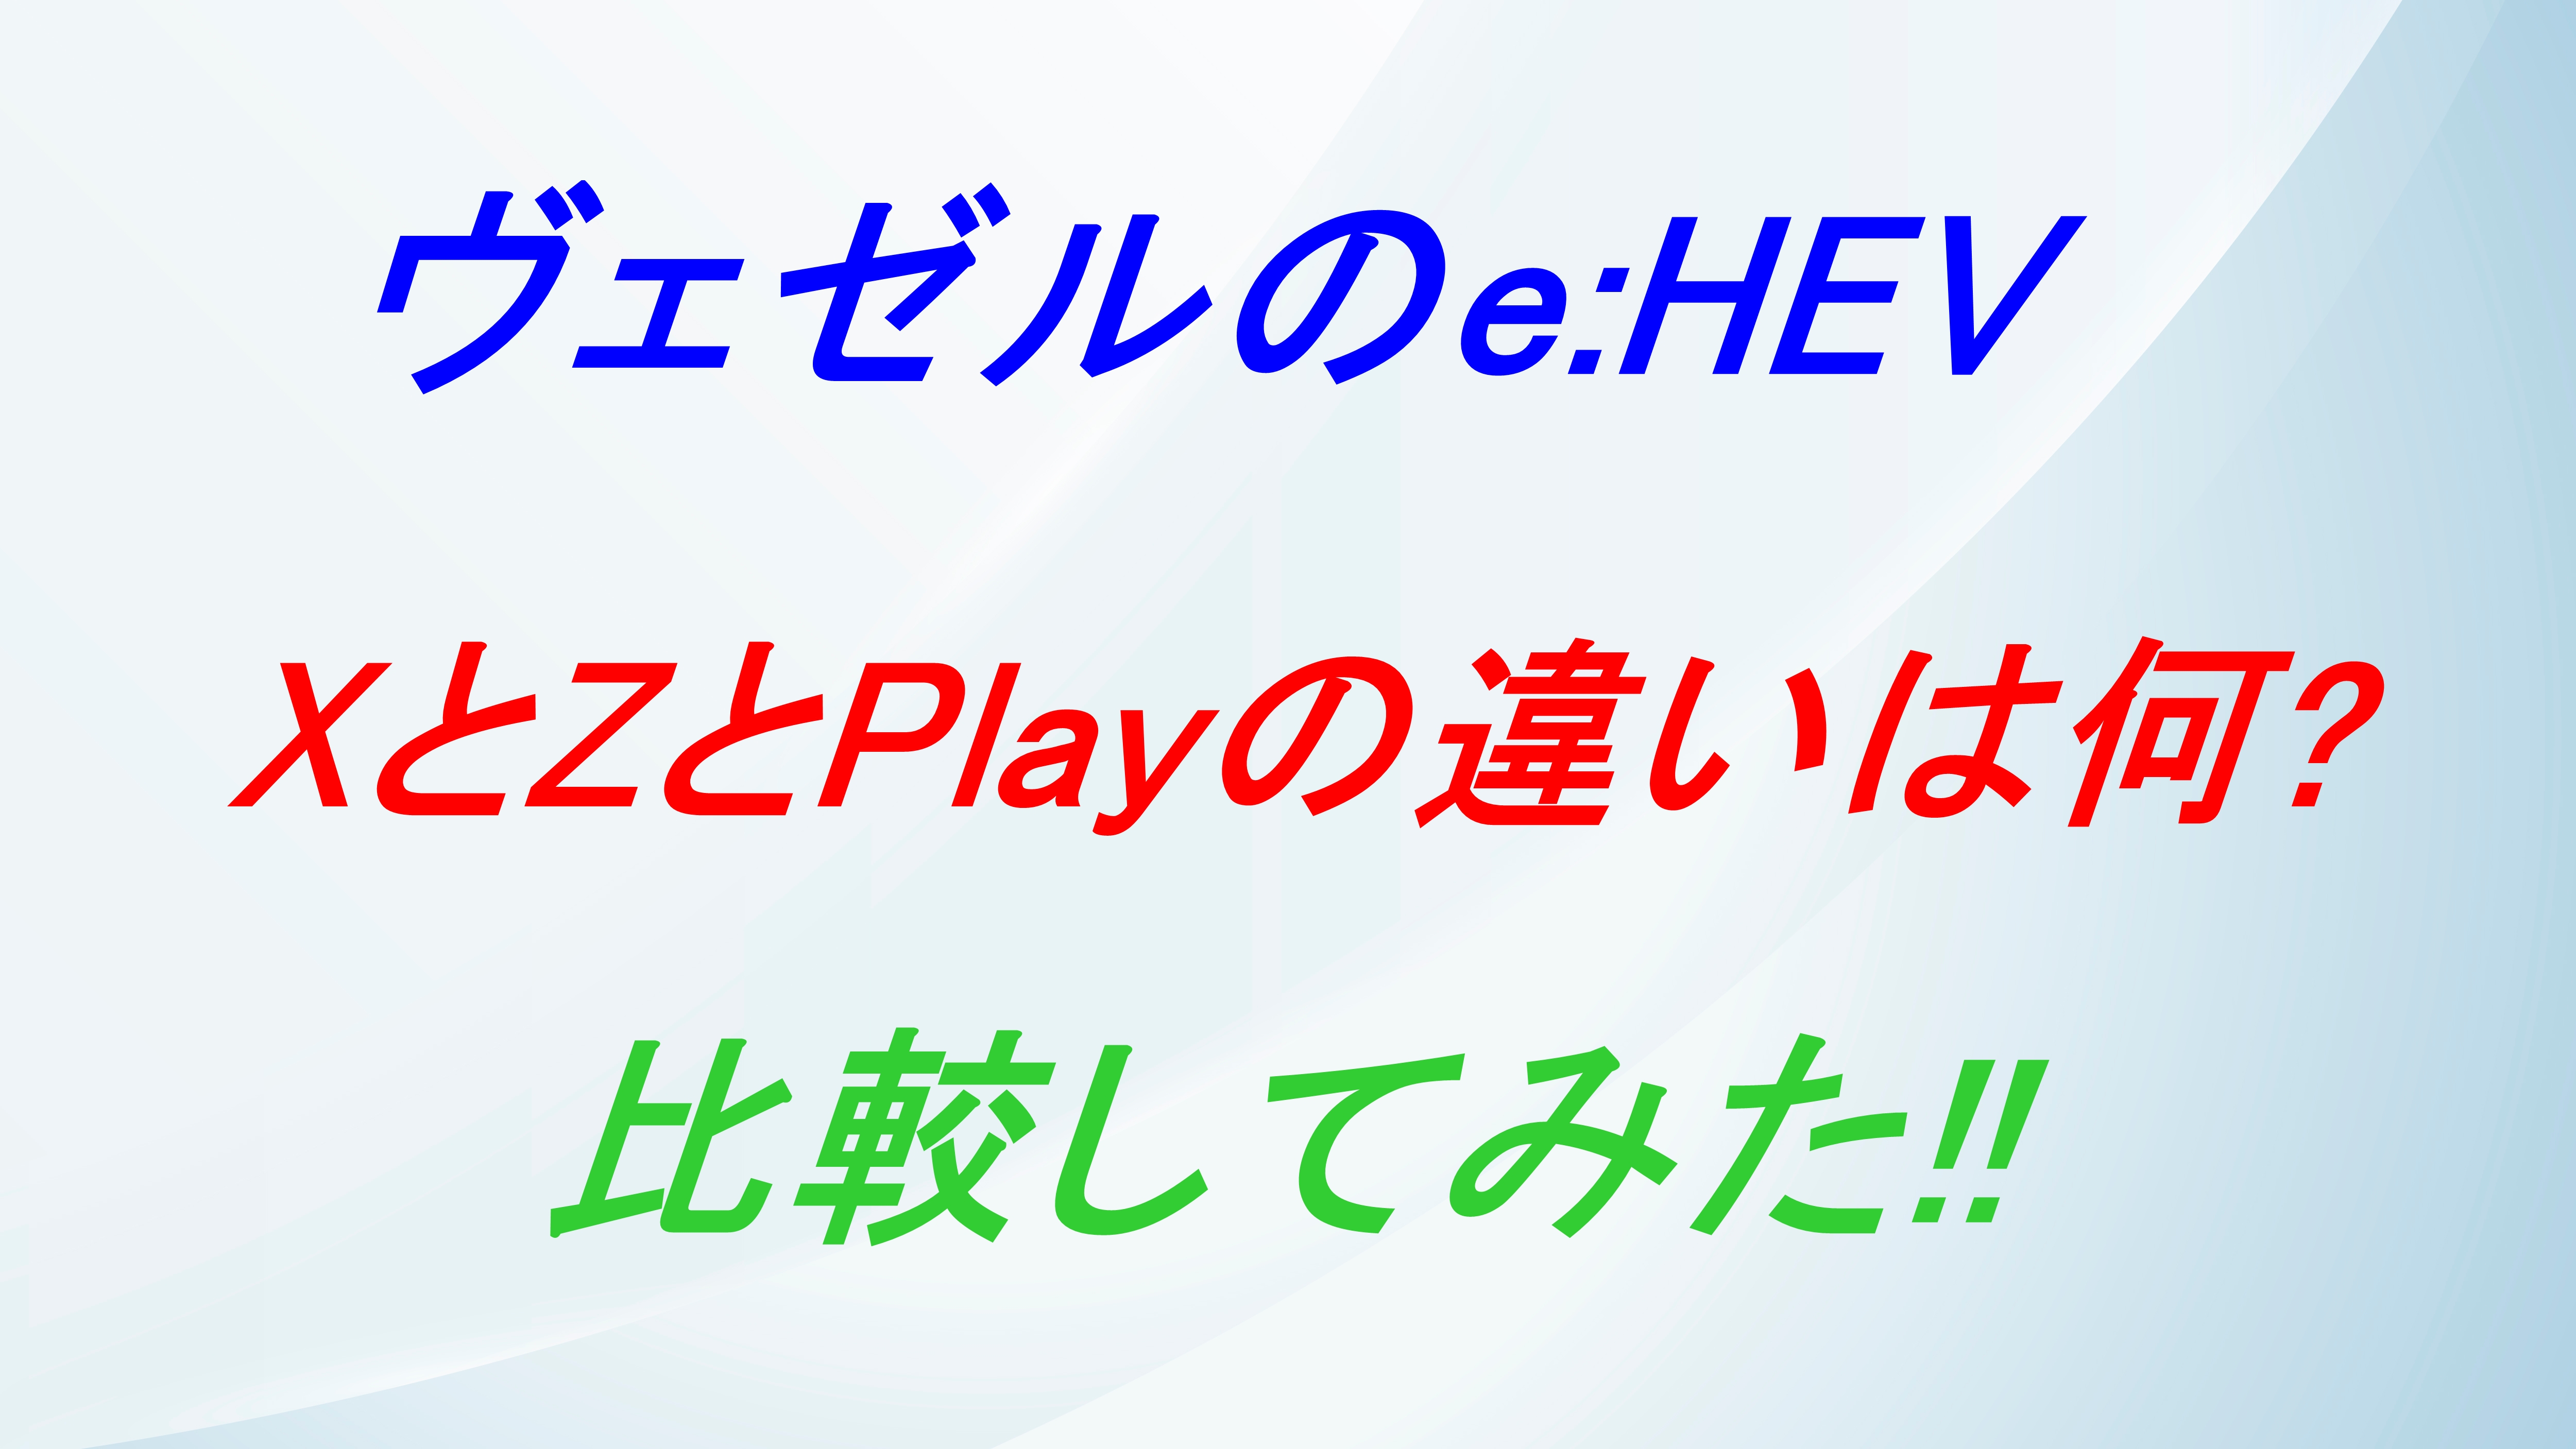 ヴェゼルのe:HEVのXとZとPlayの違いは何⁉比較してみた!!